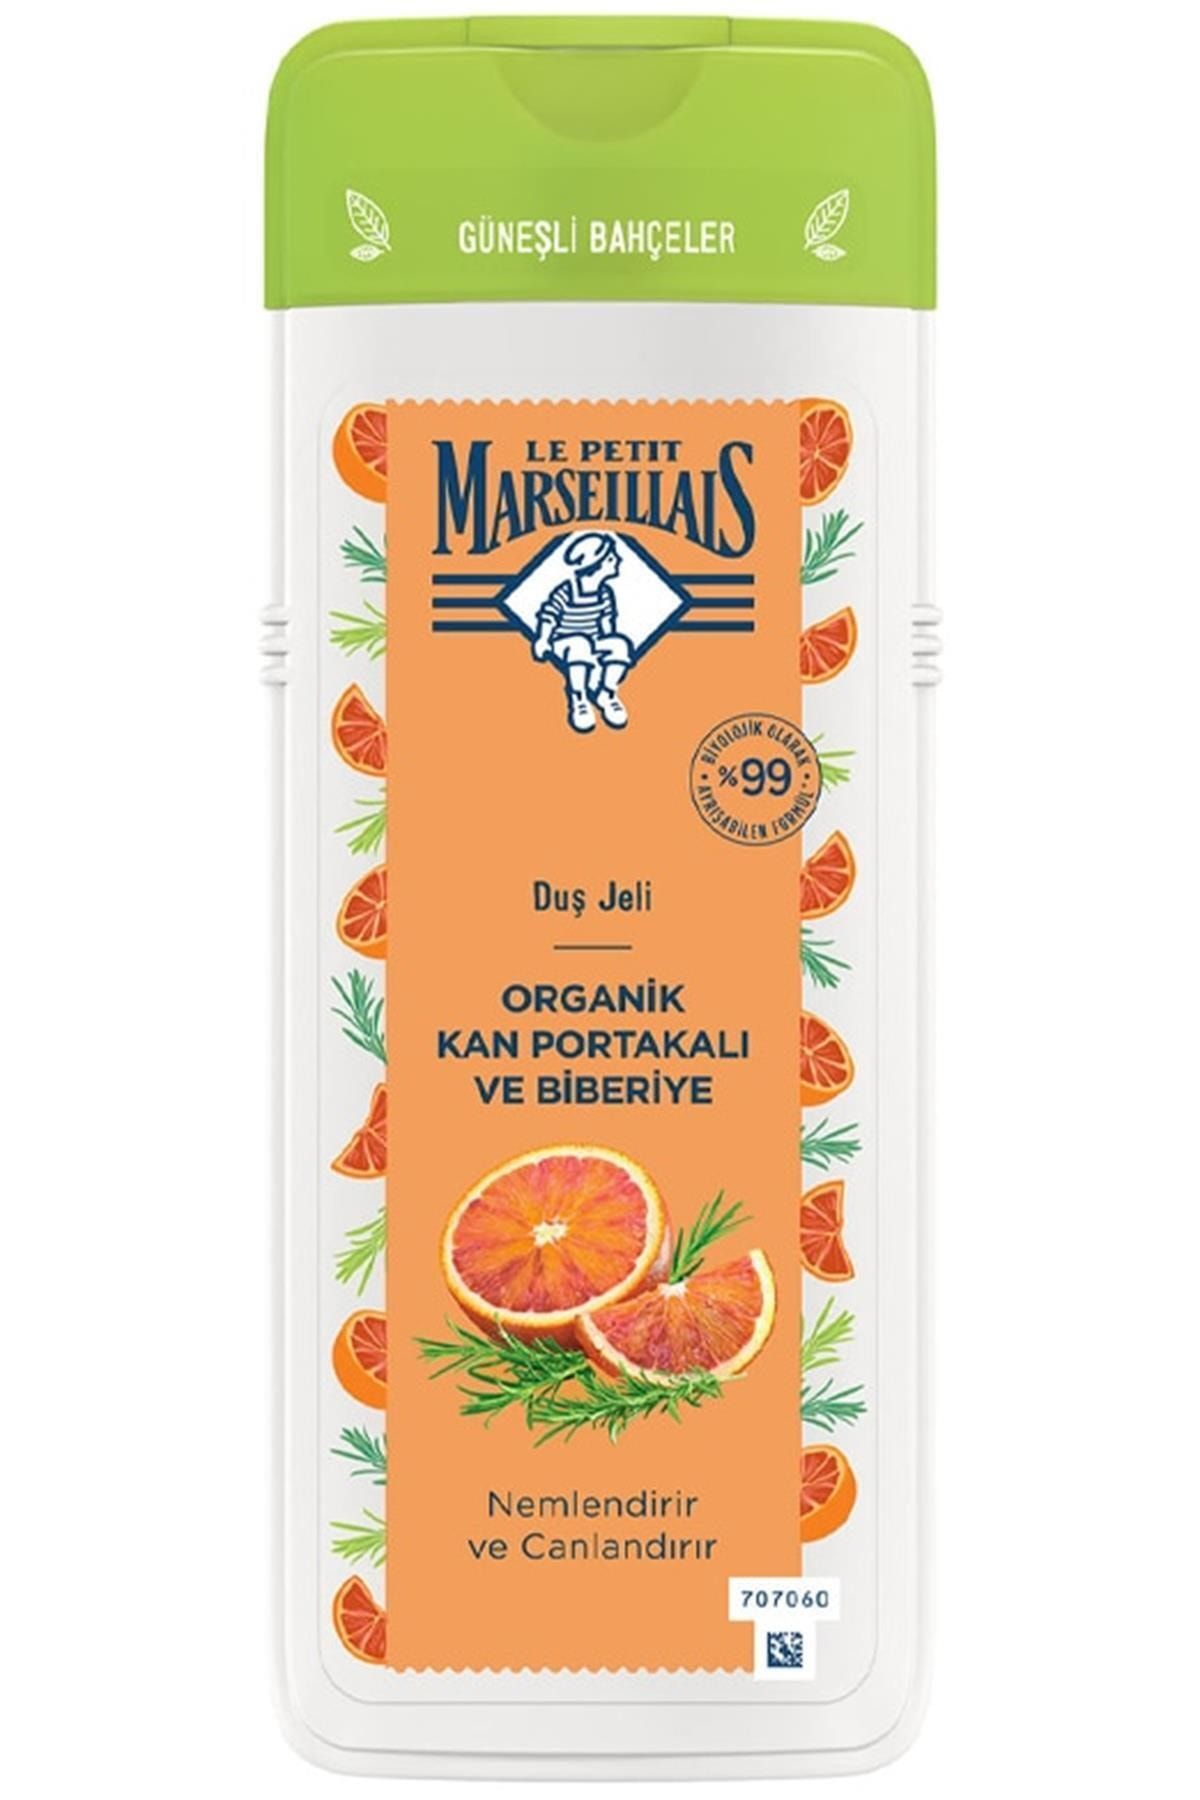 Le Petit Marseillais Marka: Organik Kan Portakalı Ve Biberiye Duş Jeli 400 Ml Kategori: Duş Jeli